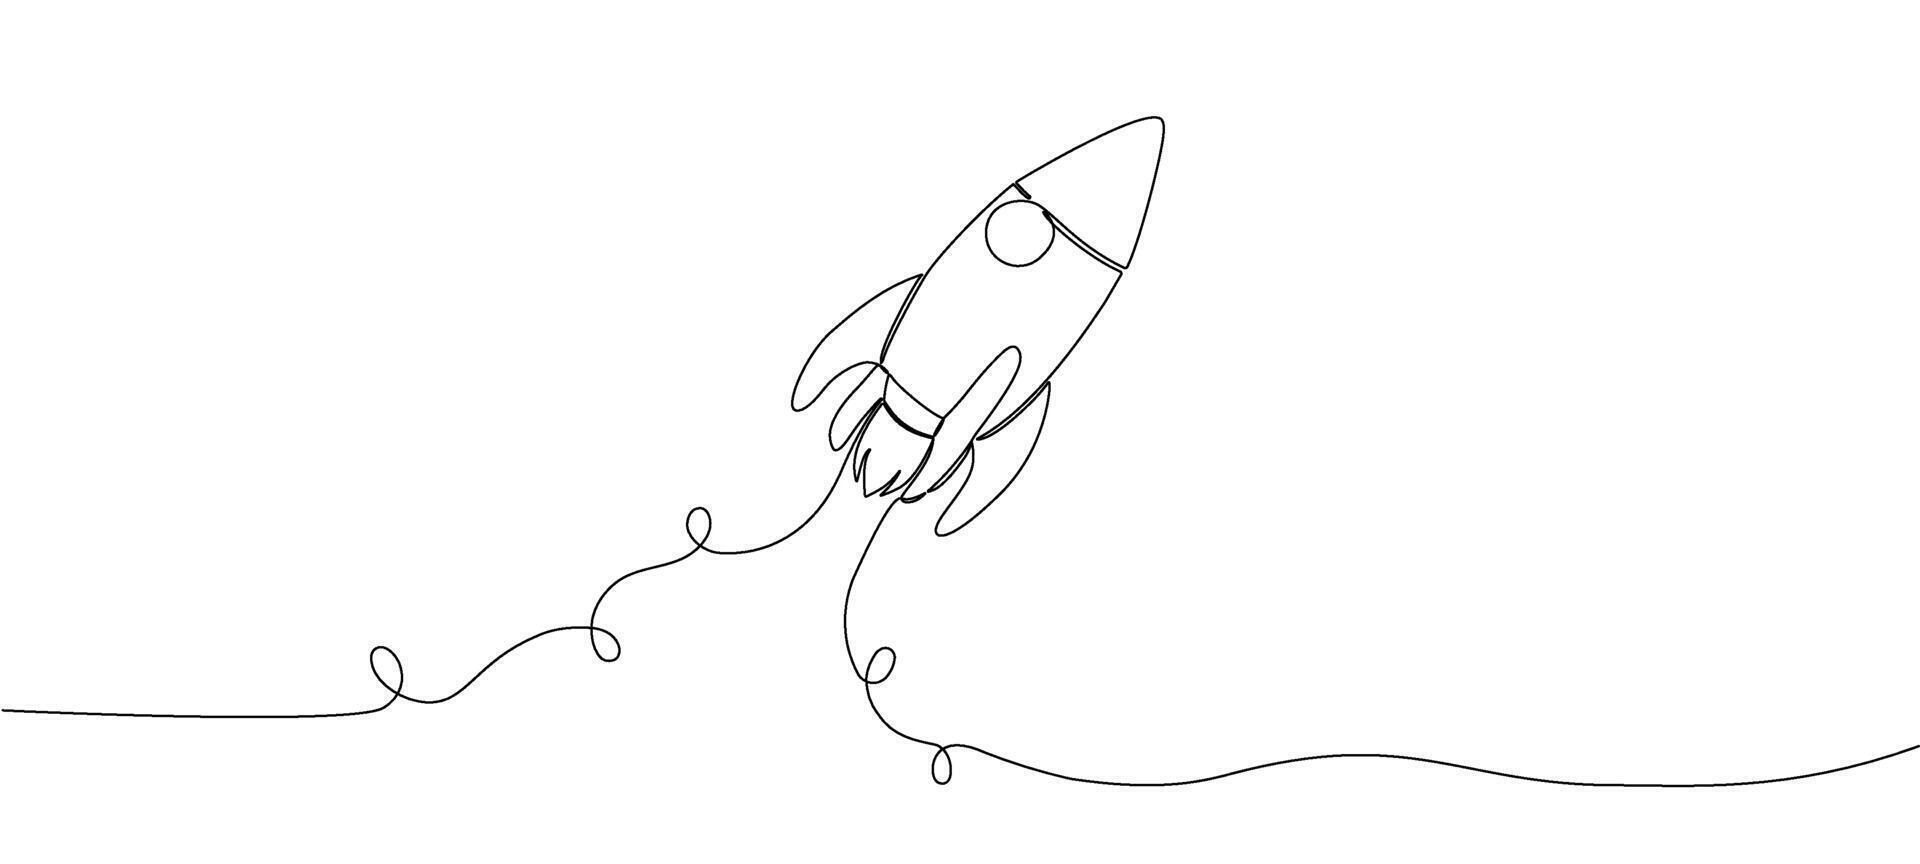 een doorlopend bewerkbare lijn tekening van een retro ruimteschip vliegend omhoog. raket van een ruimteschip wezen gelanceerd in ruimte. single lijn tekening vector grafisch illustratie.